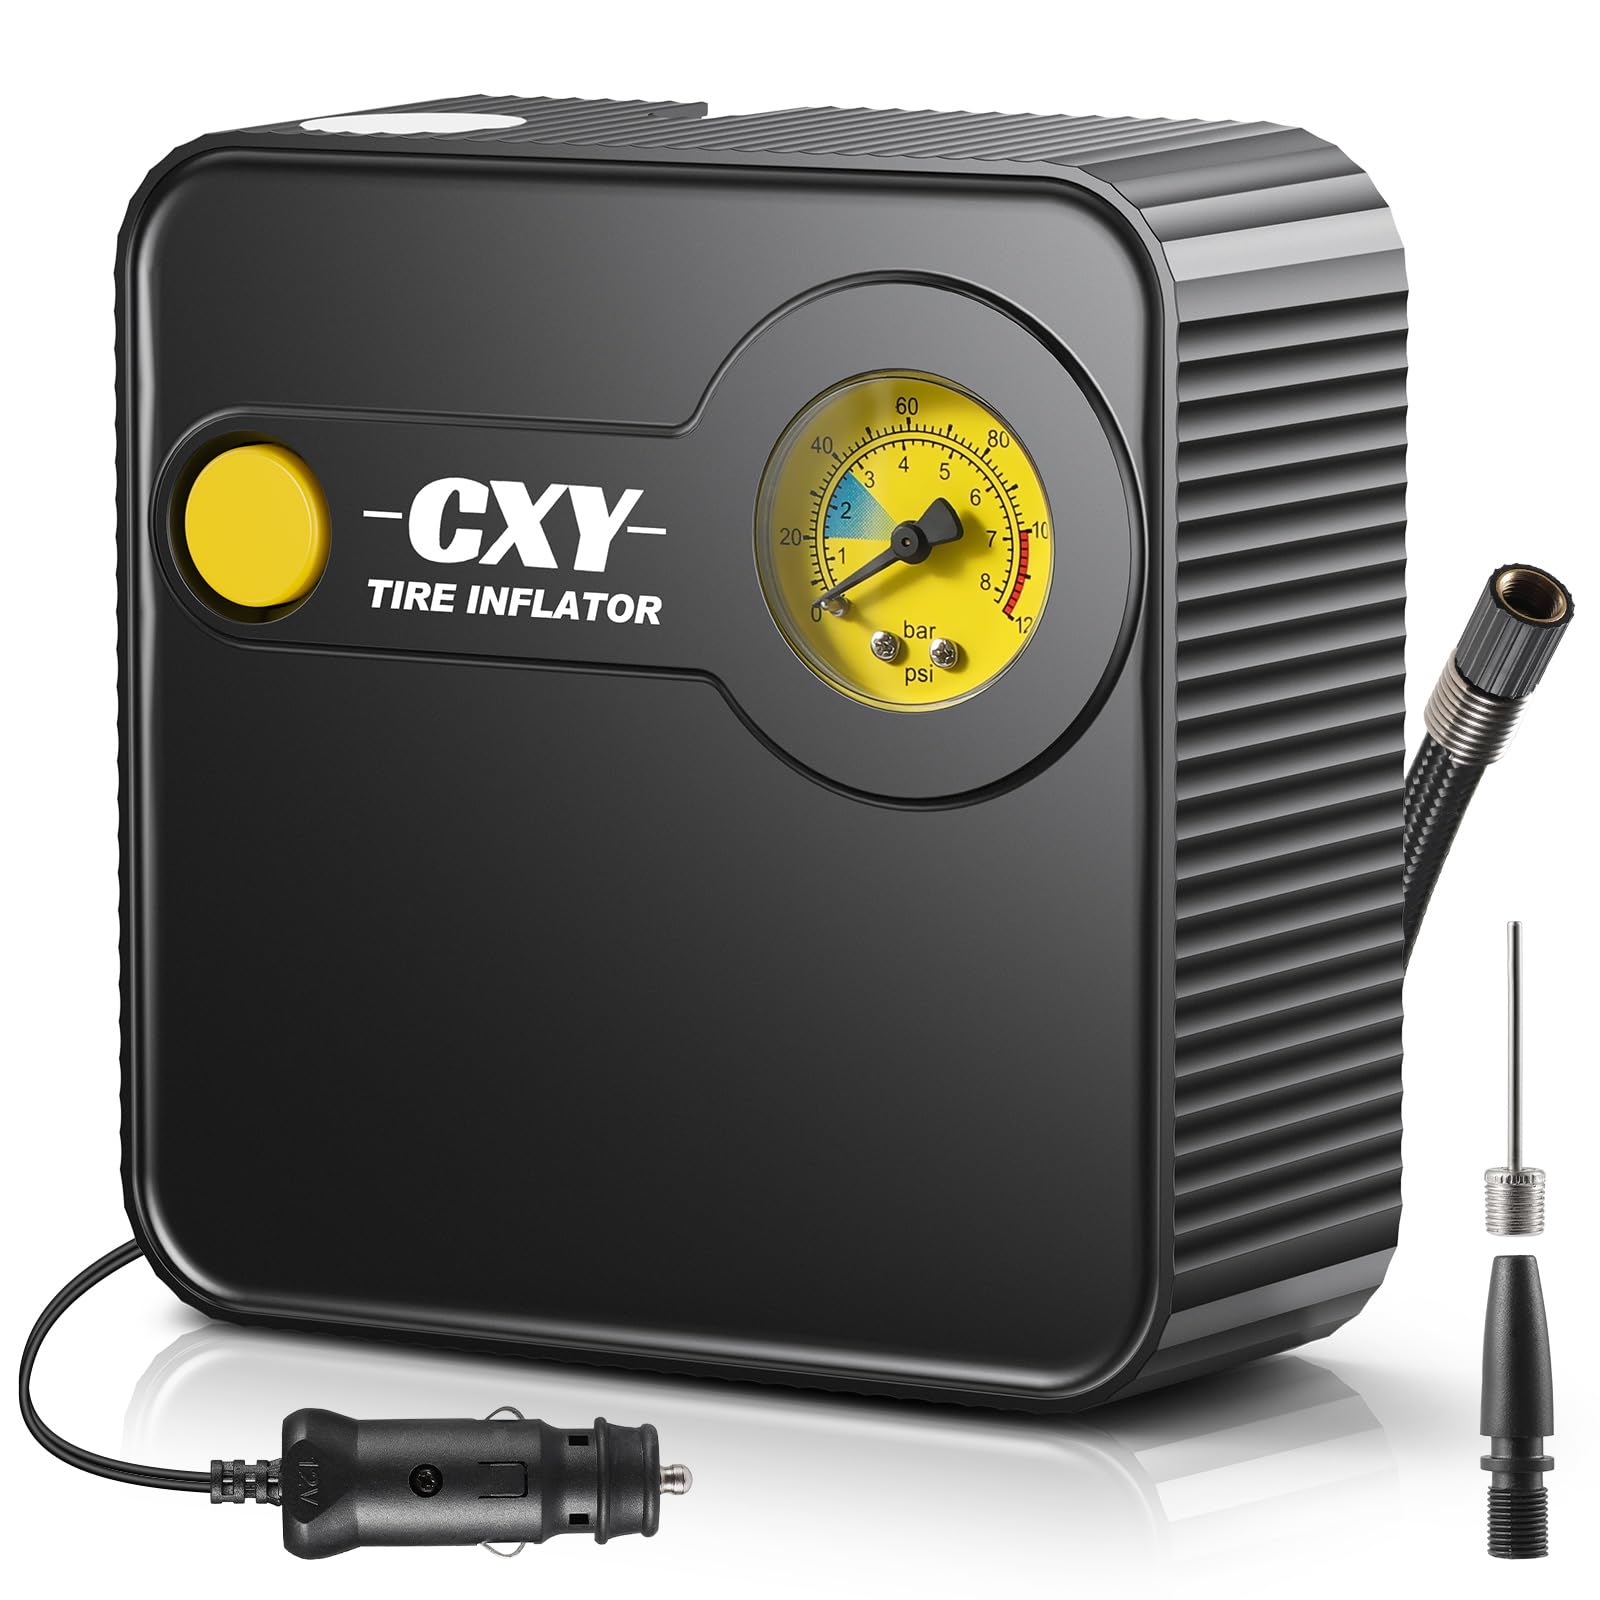 Cxy Elektrische Luftpumpe-Auto Kompressor mit LED-Licht & Reifendruckmesser - Schnelle Aufpumpung Tragbare Auto Luftpumpe Fahrradluftpumpe Kompressor für Auto, Fahrrader, Motorrad, Ball von Cxy